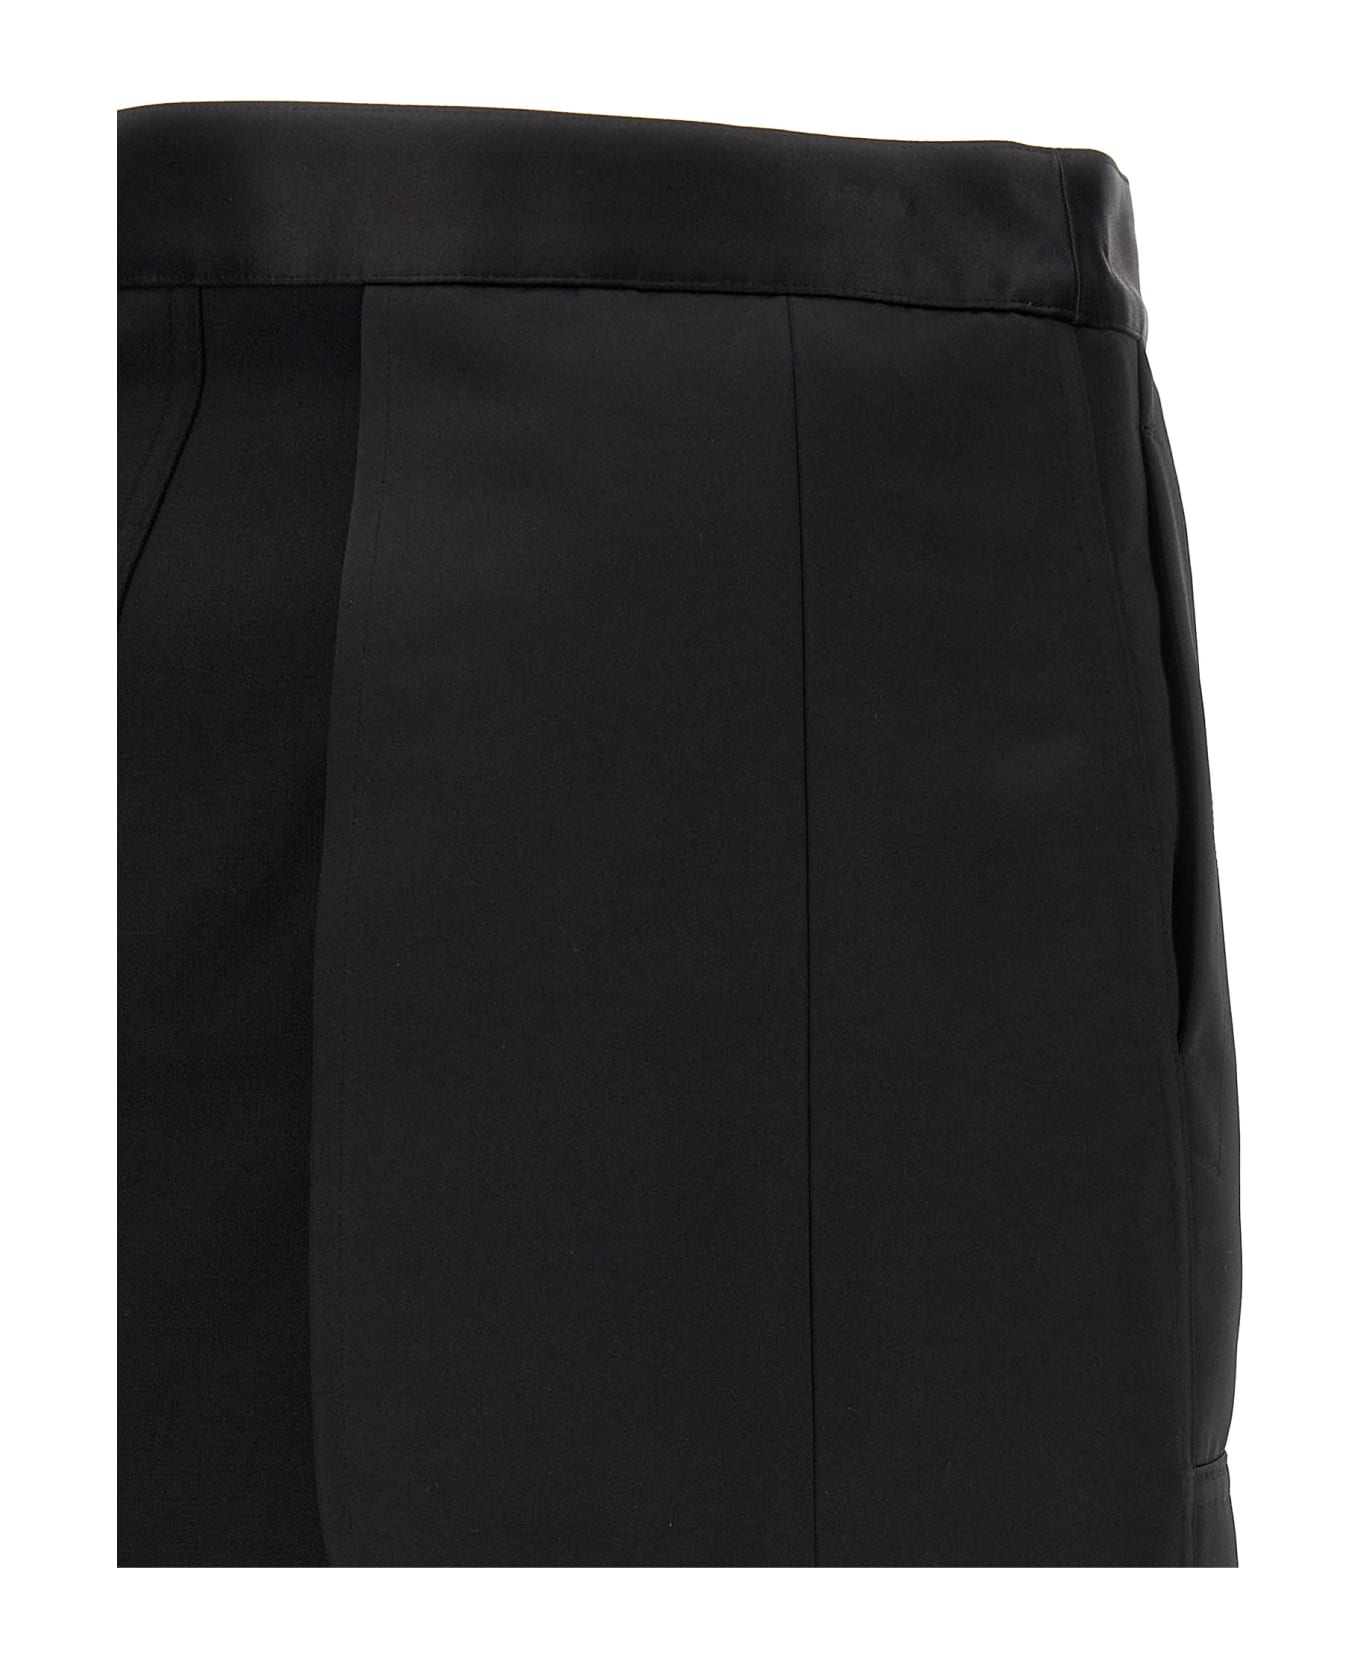 Helmut Lang Satin Panel Skirt - Black  